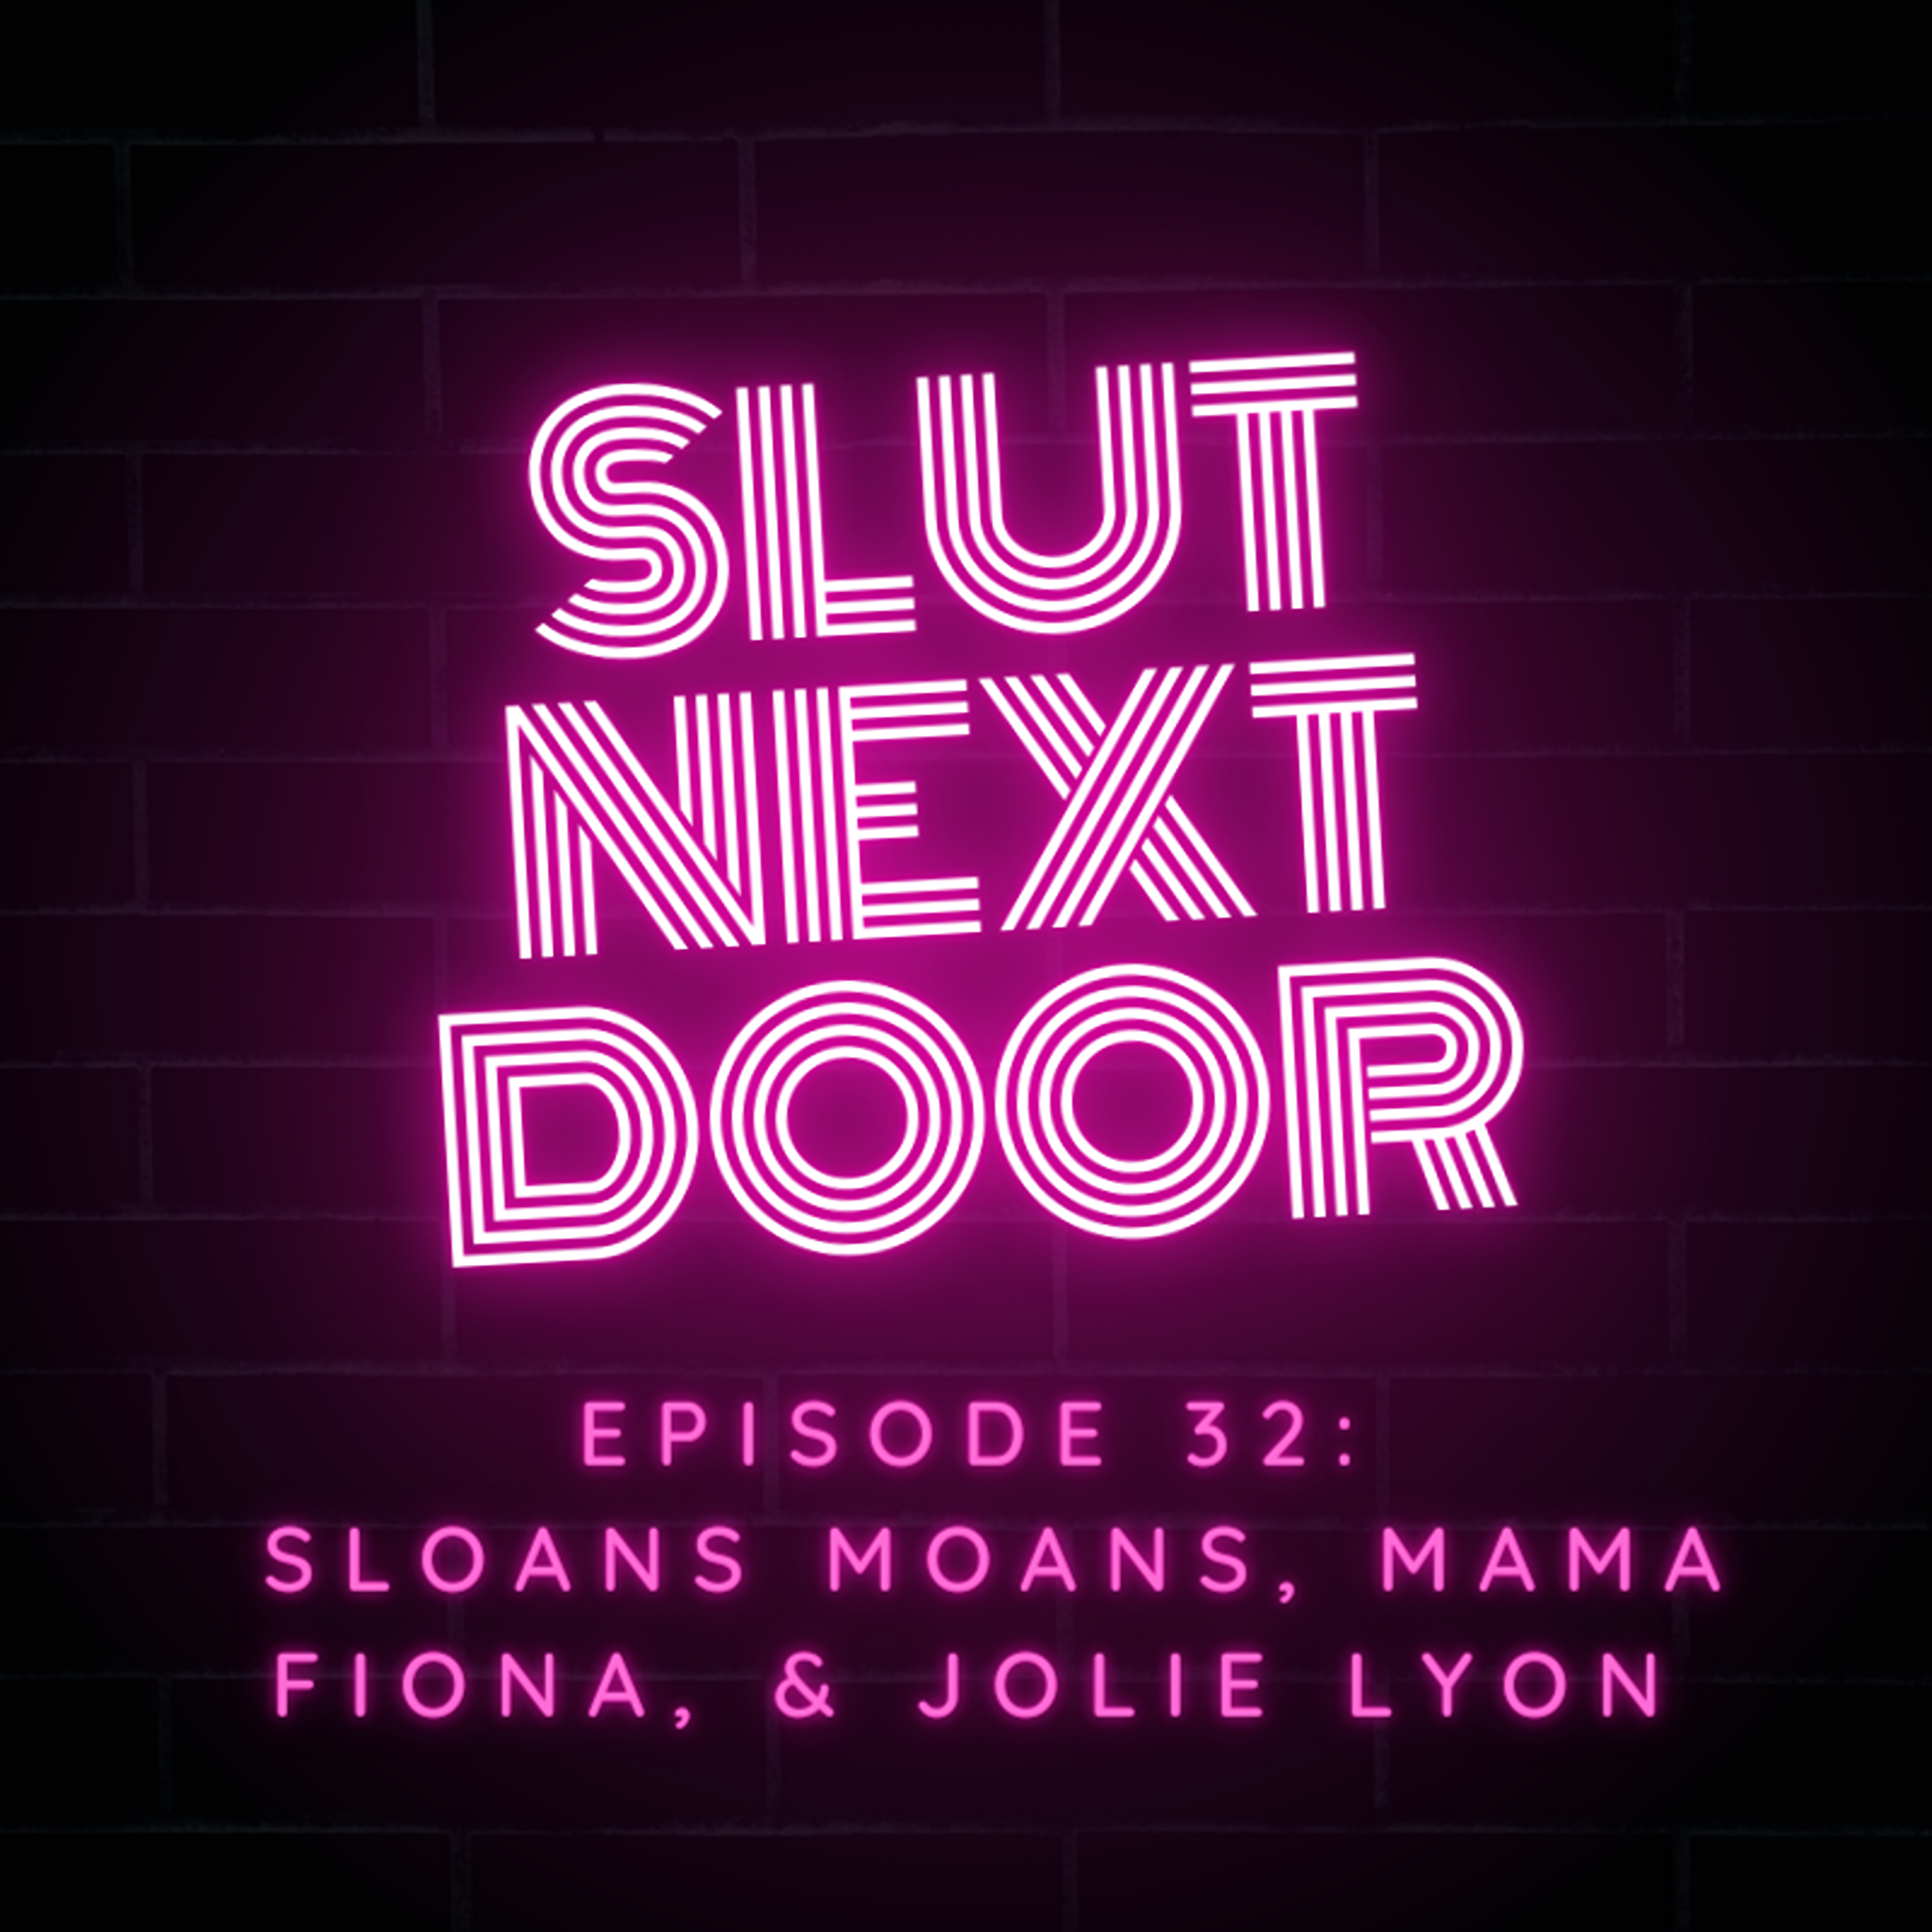 Ep 32 Sloans Moans, Mama Fiona, & Jolie Lyon